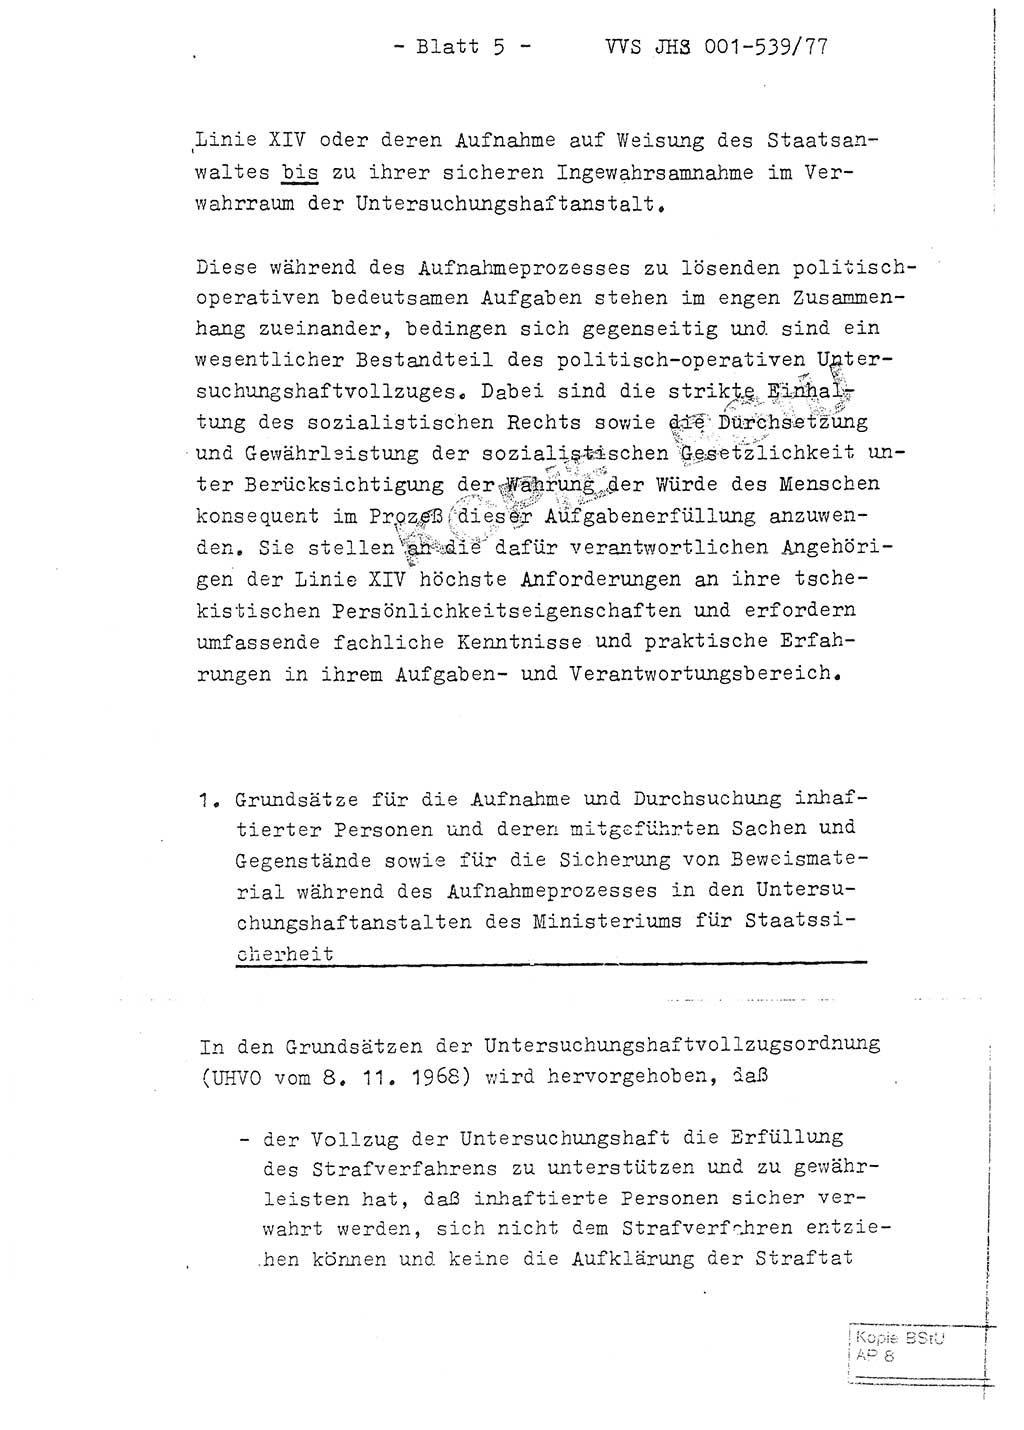 Fachschulabschlußarbeit Hauptmann Dietrich Jung (Abt. ⅩⅣ), Leutnant Klaus Klötzner (Abt. ⅩⅣ), Ministerium für Staatssicherheit (MfS) [Deutsche Demokratische Republik (DDR)], Juristische Hochschule (JHS), Vertrauliche Verschlußsache (VVS) 001-539/77, Potsdam 1978, Seite 5 (FS-Abschl.-Arb. MfS DDR JHS VVS 001-539/77 1978, S. 5)